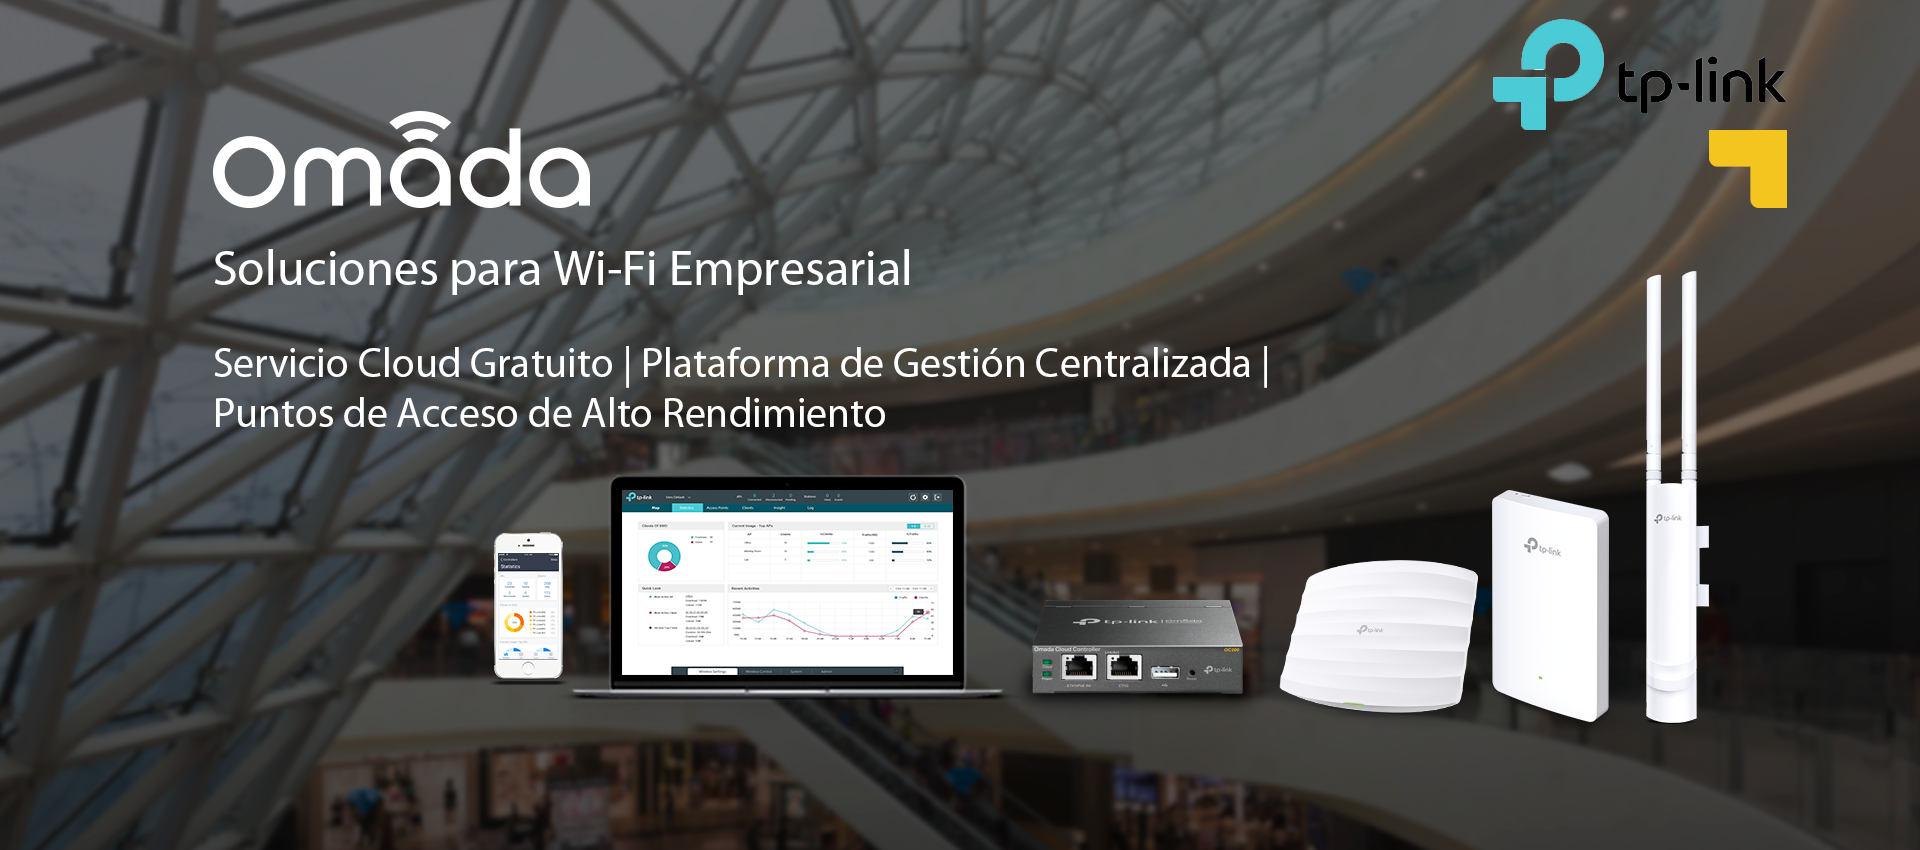 Omada, la solución Wi-Fi para empresas